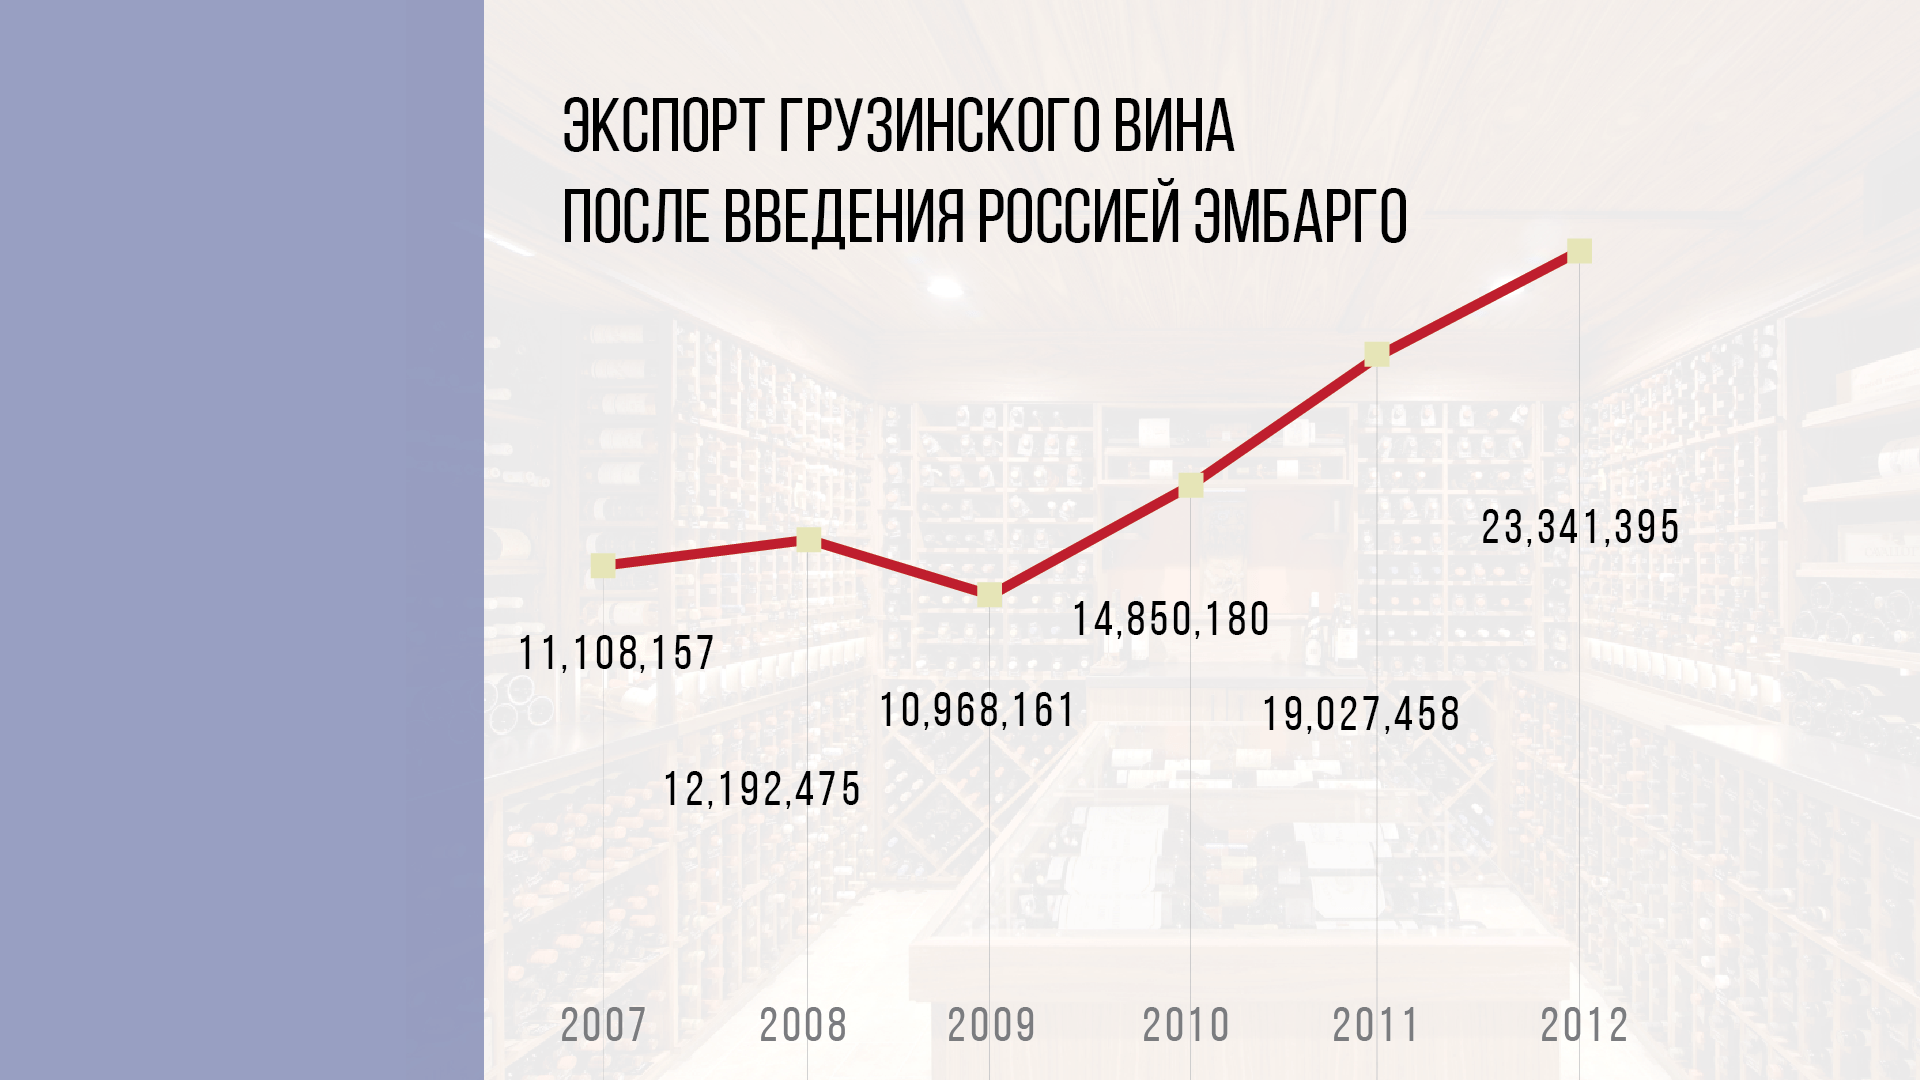 Экспорт после введения Россией эмбарго. Инфографика Jamnews